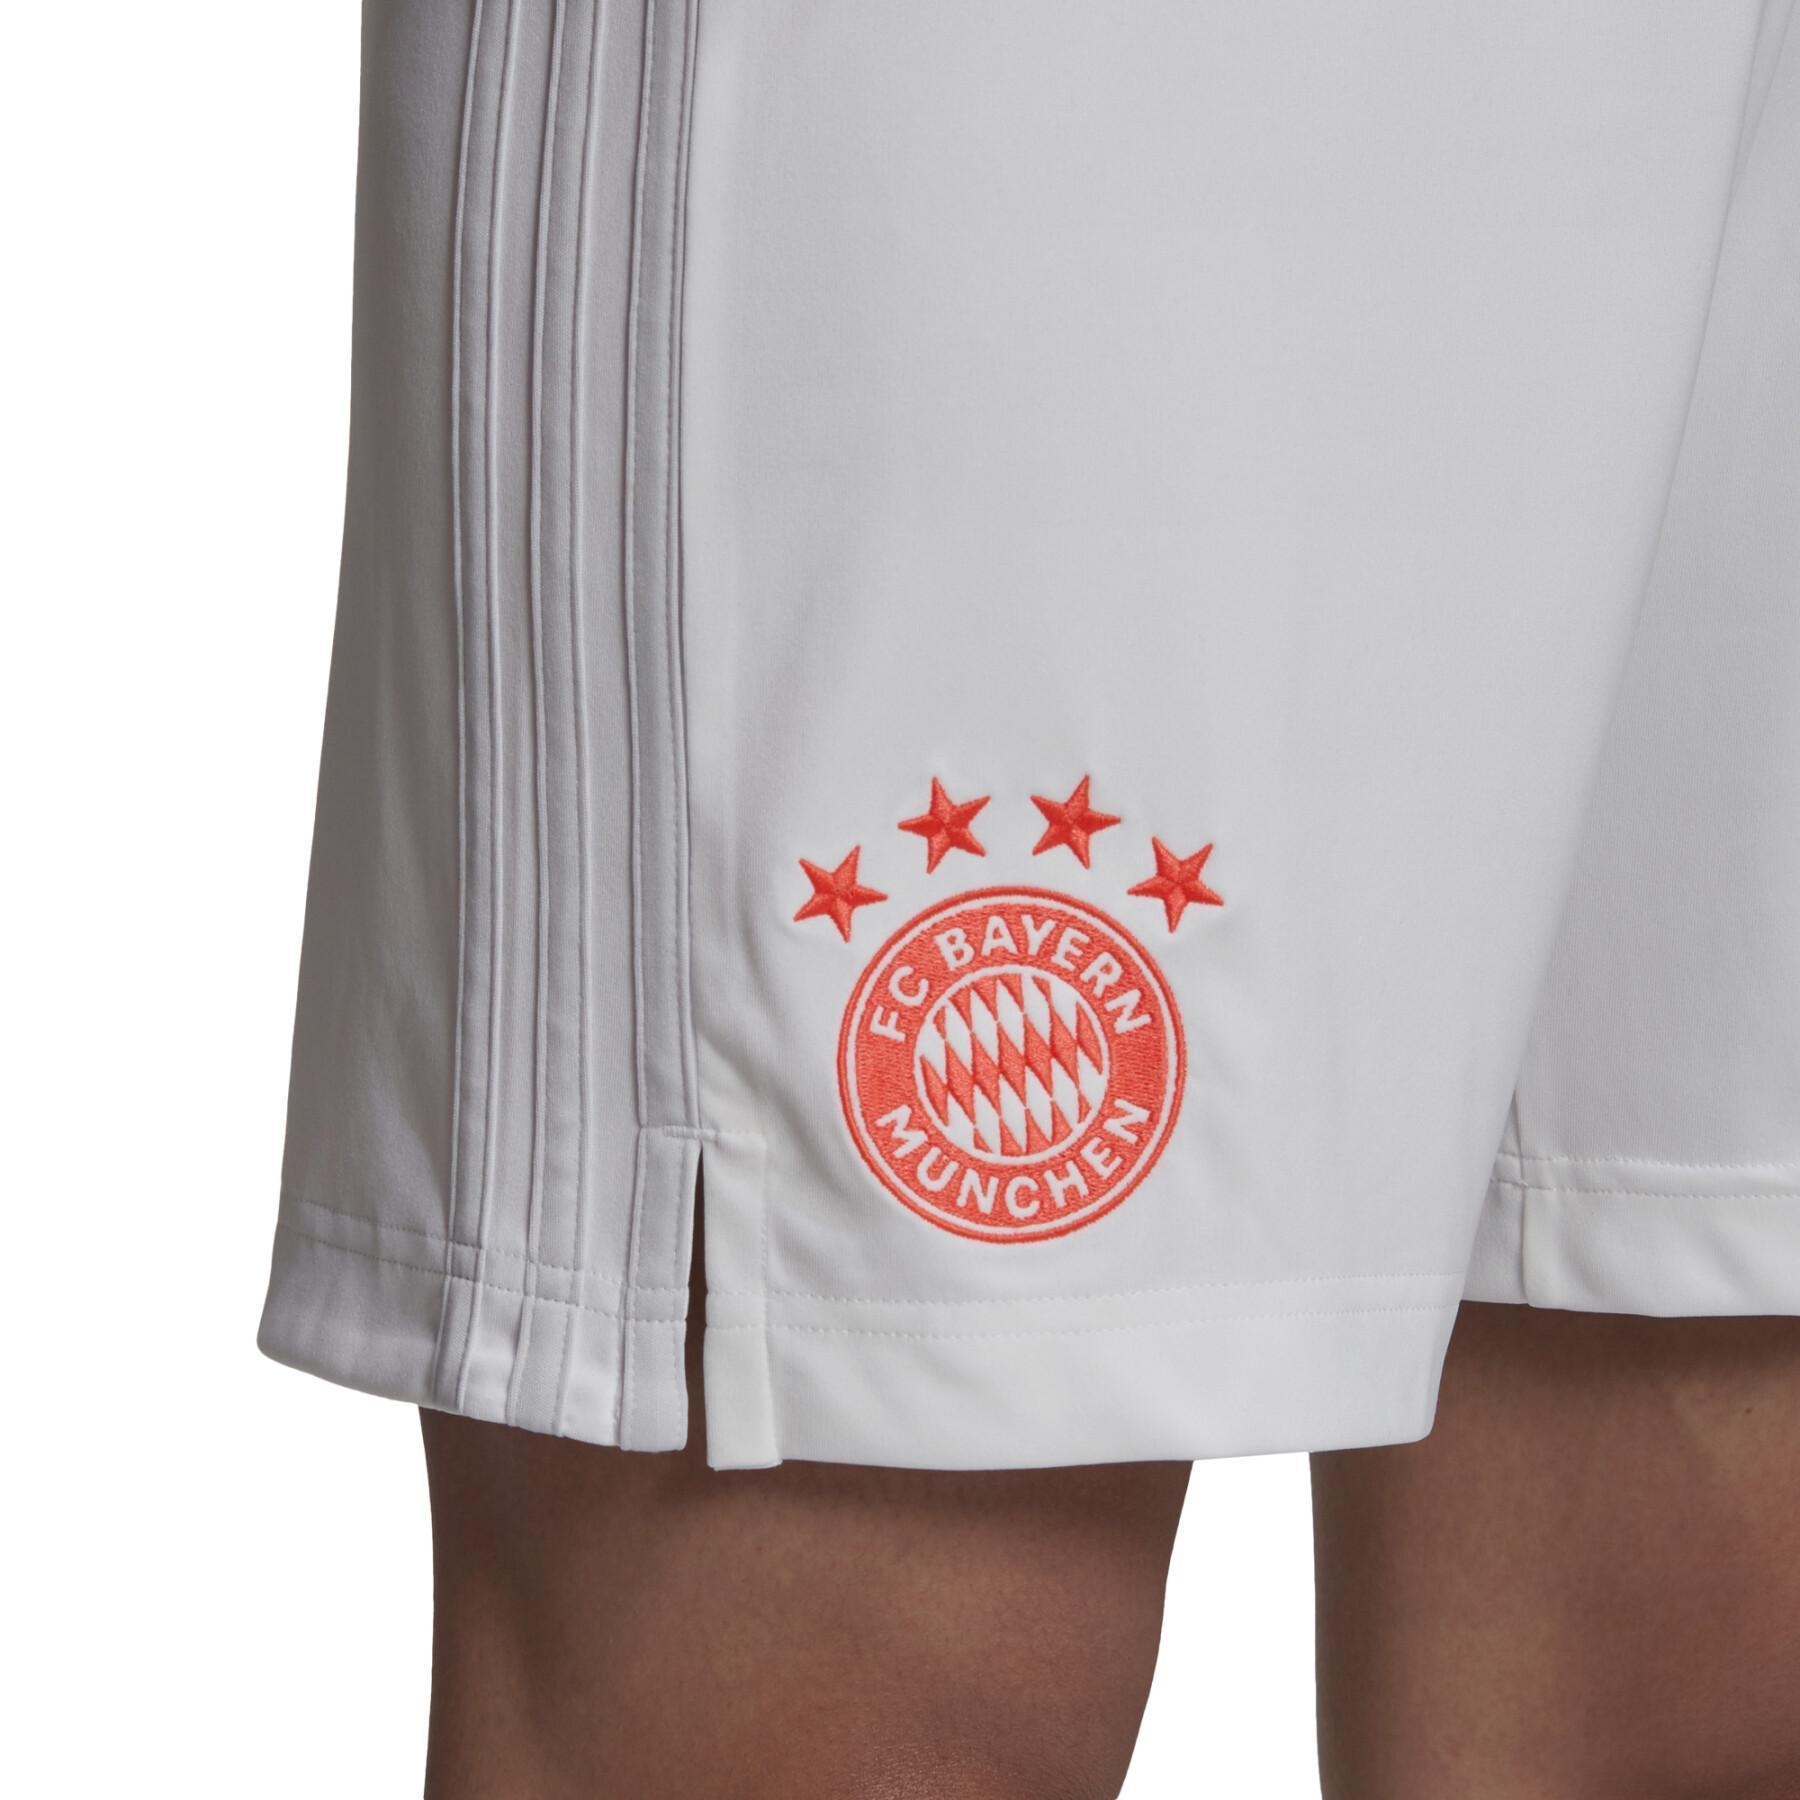 Bayern Outdoor-Shorts 2020/21